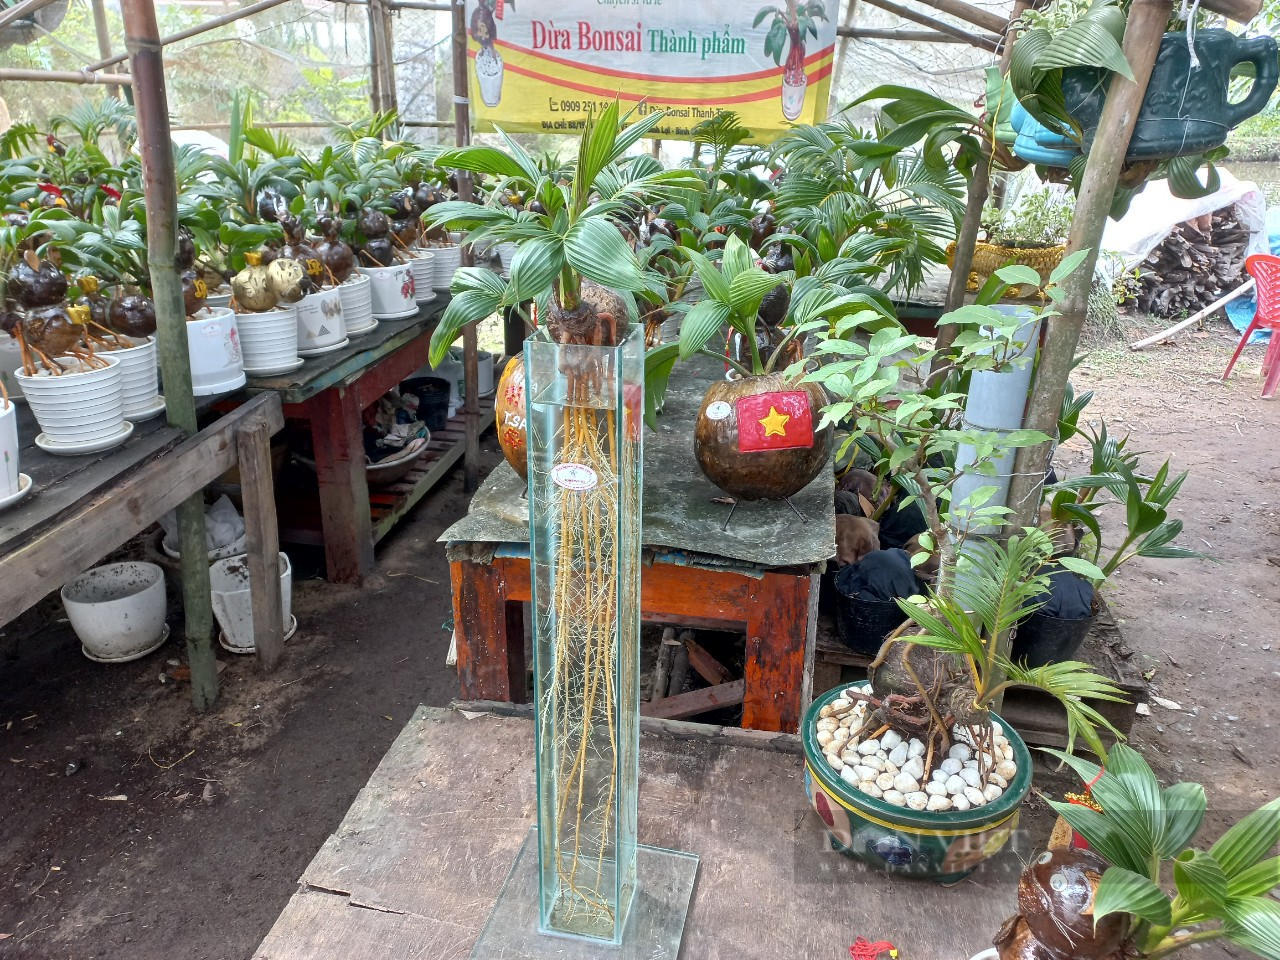 Độc lạ cây dừa bonsai chơi Tết có bộ rễ trắng dài cả mét ở TP.HCM - Ảnh 2.